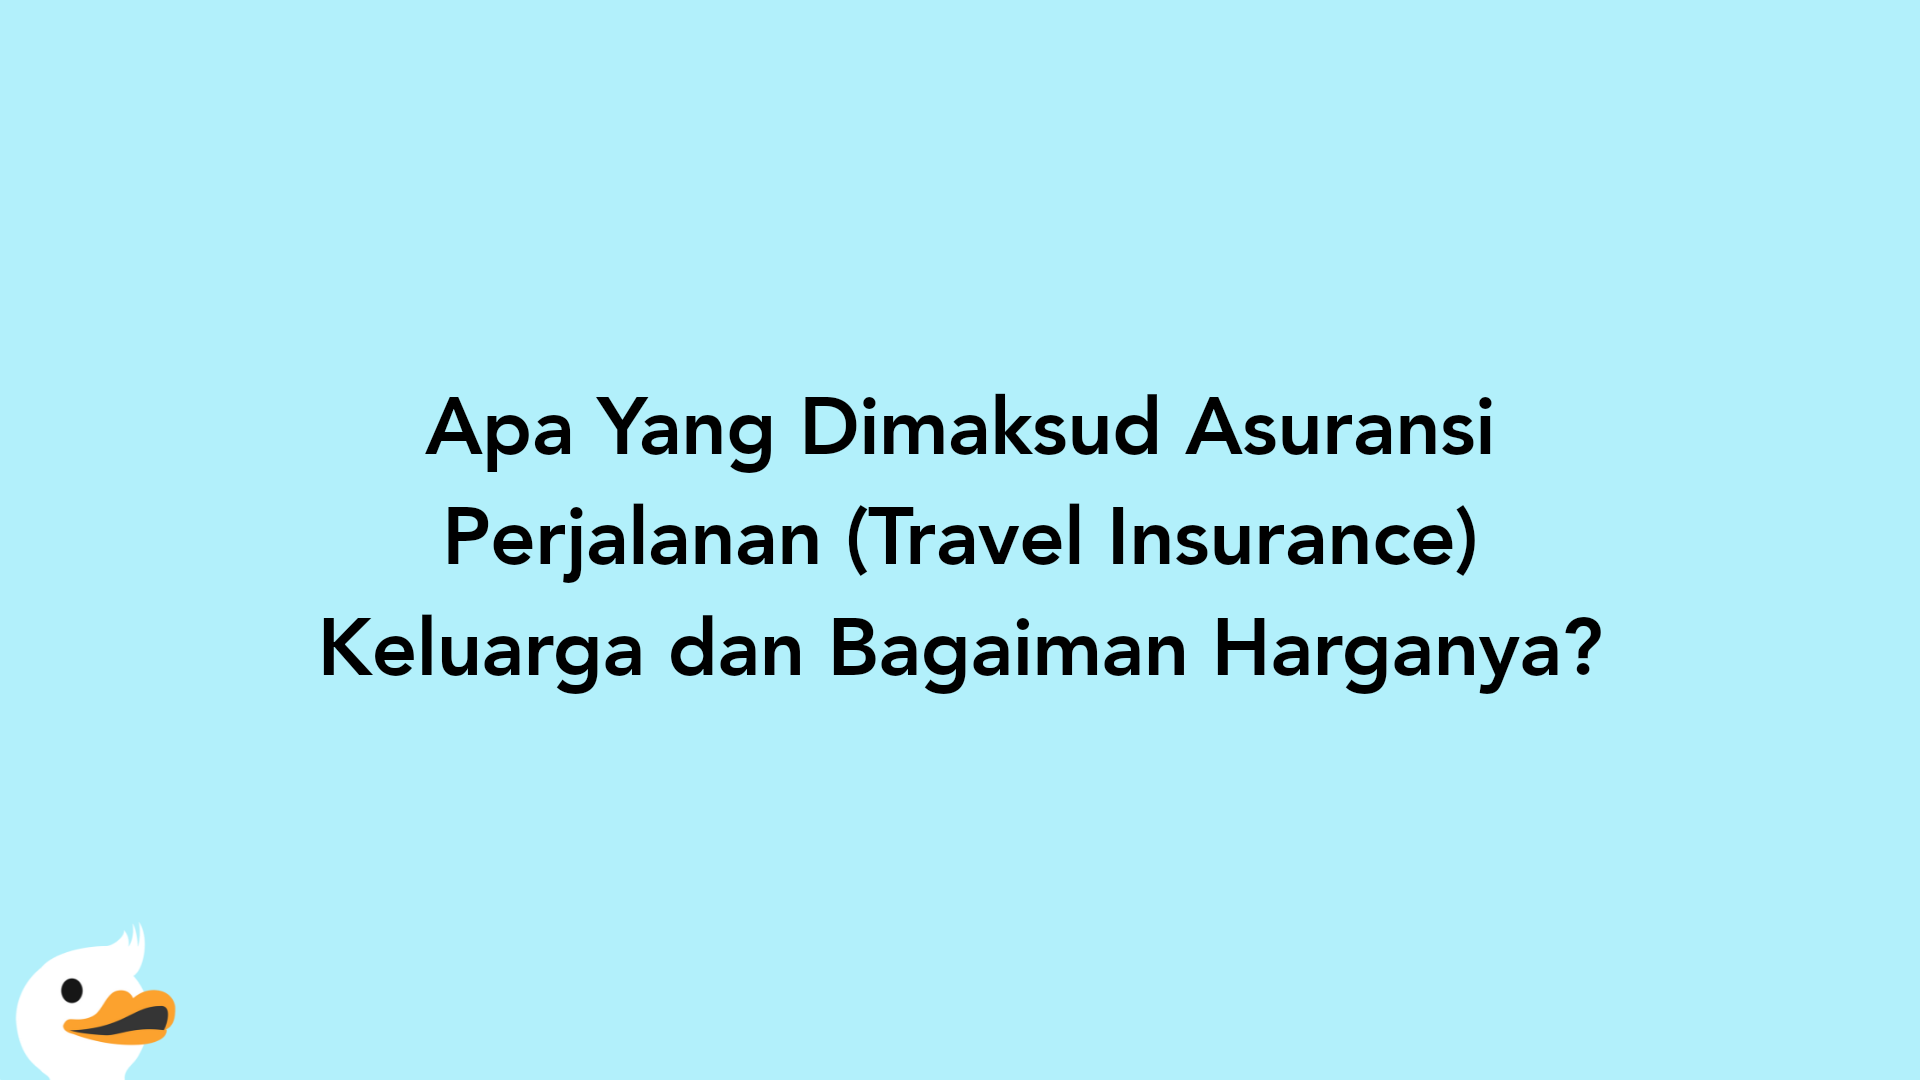 Apa Yang Dimaksud Asuransi Perjalanan (Travel Insurance) Keluarga dan Bagaiman Harganya?